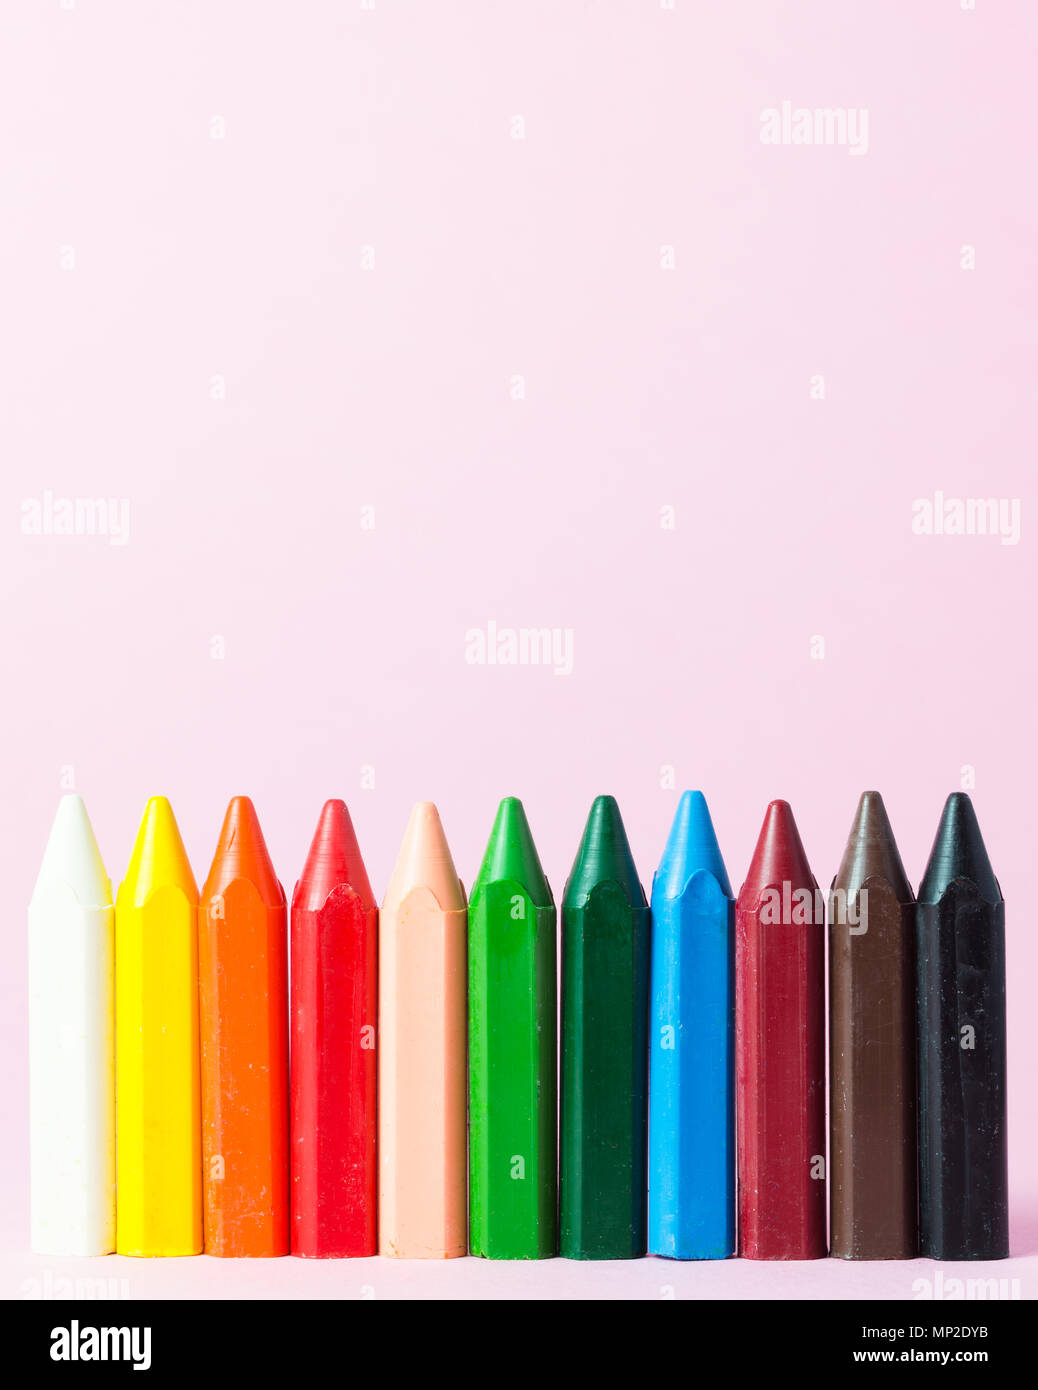 De nouveaux crayons de cire de différentes couleurs isolé sur un fond rose Banque D'Images